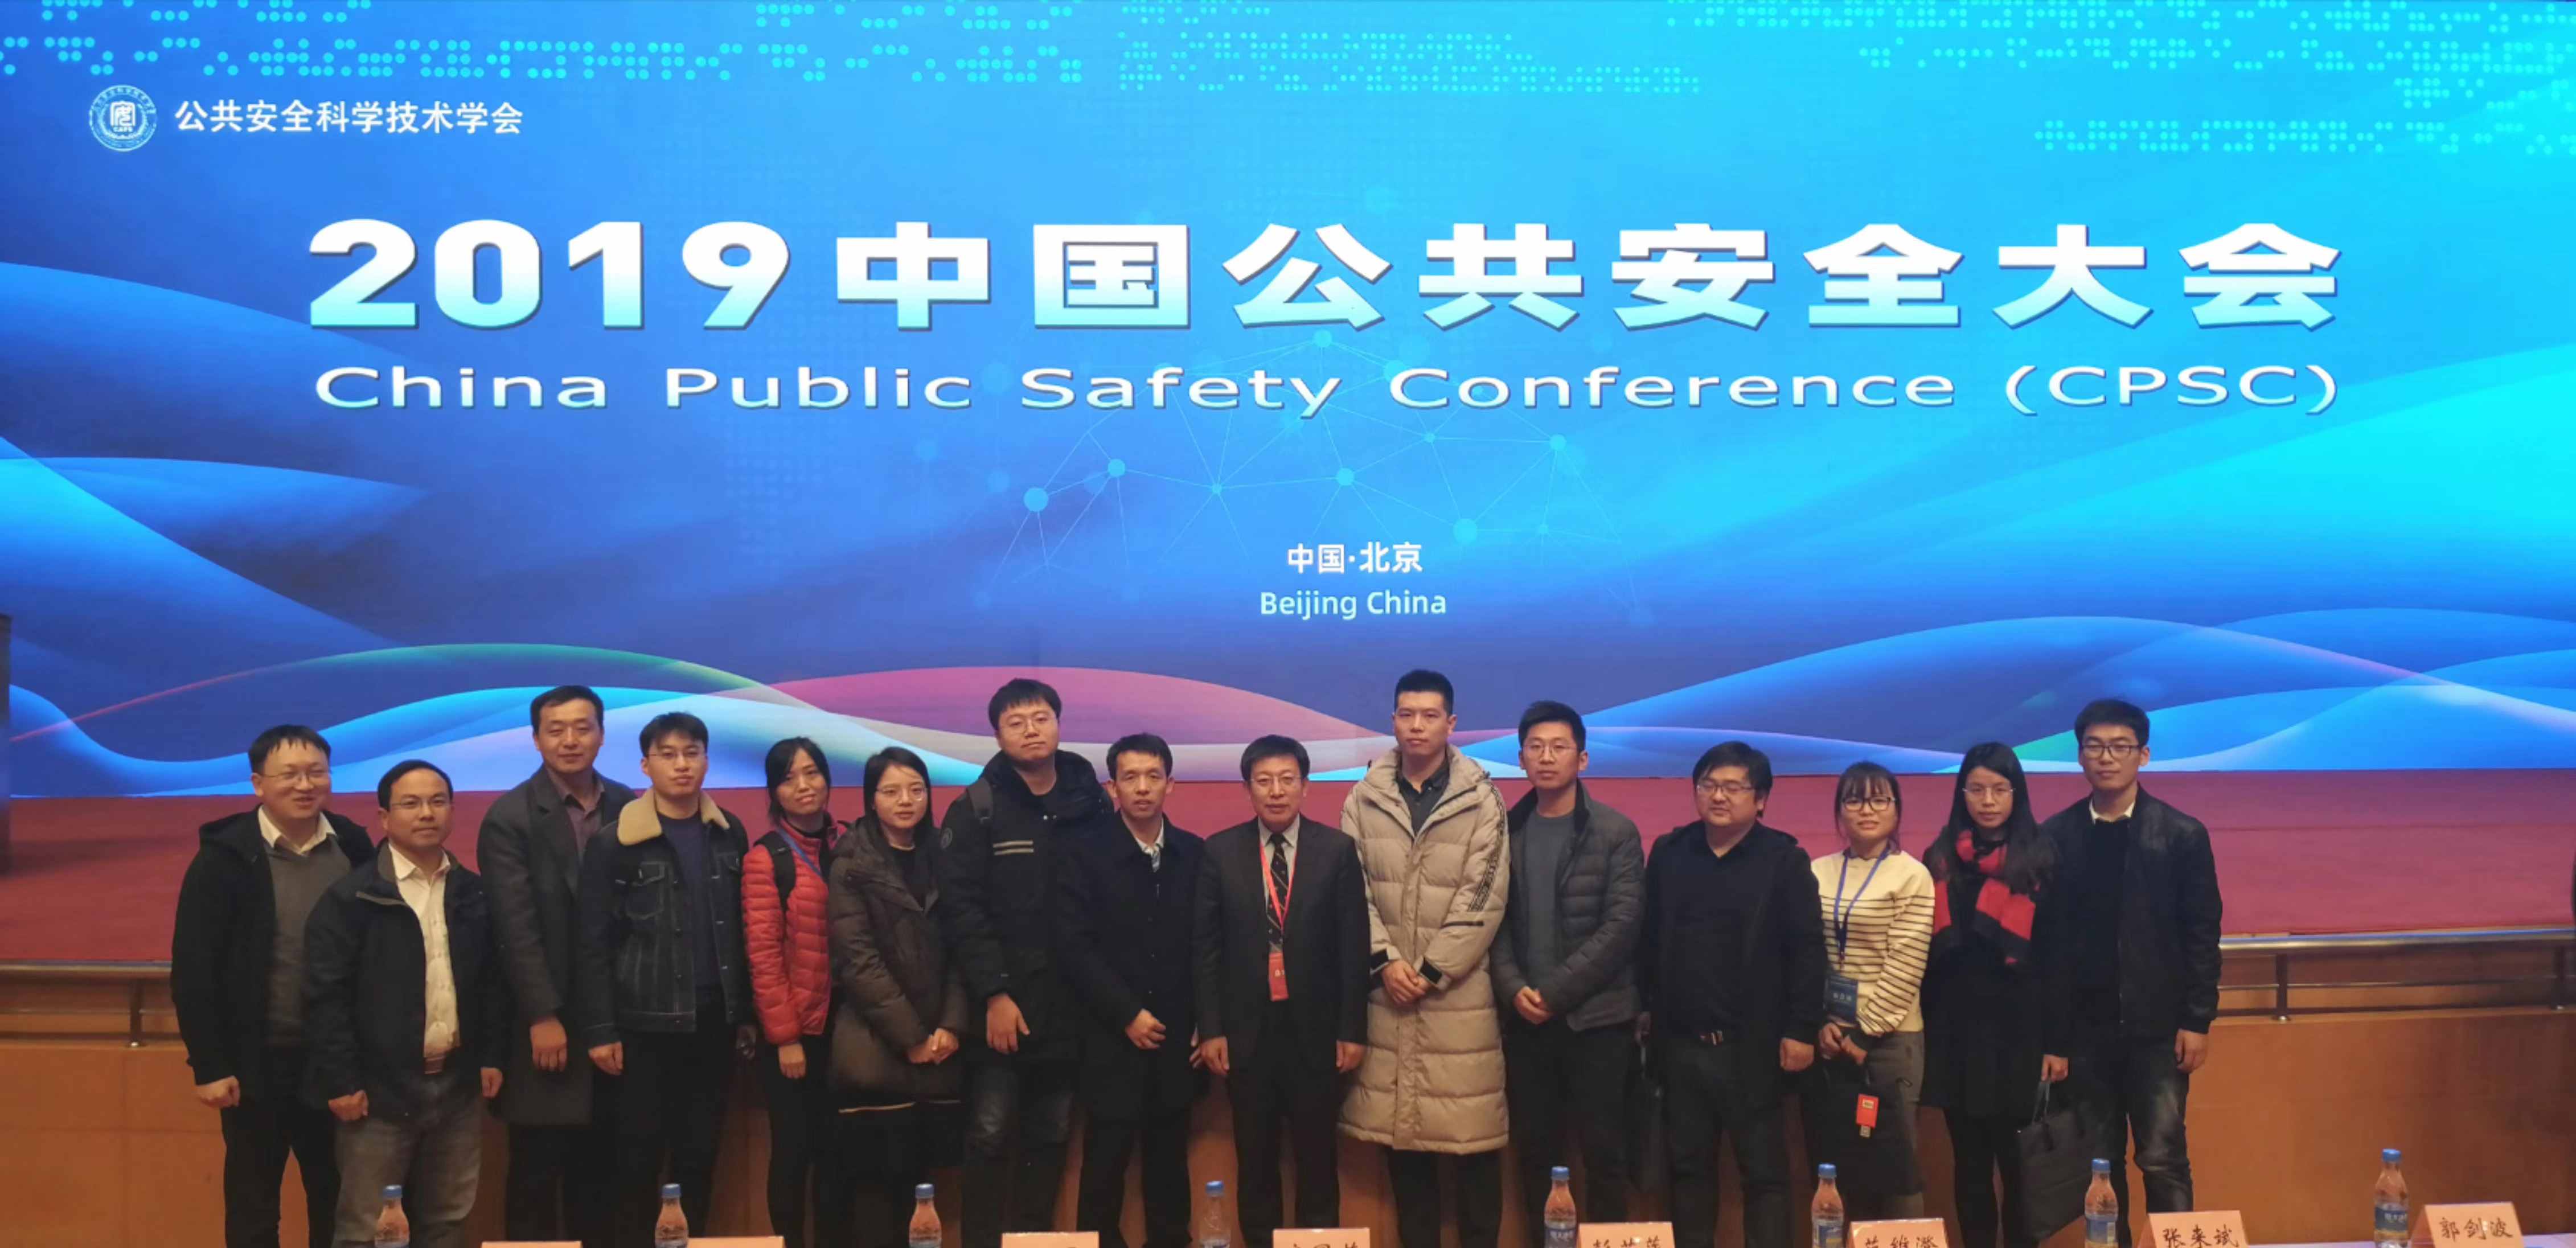 2019年11月22日-24日中国公共安全大会